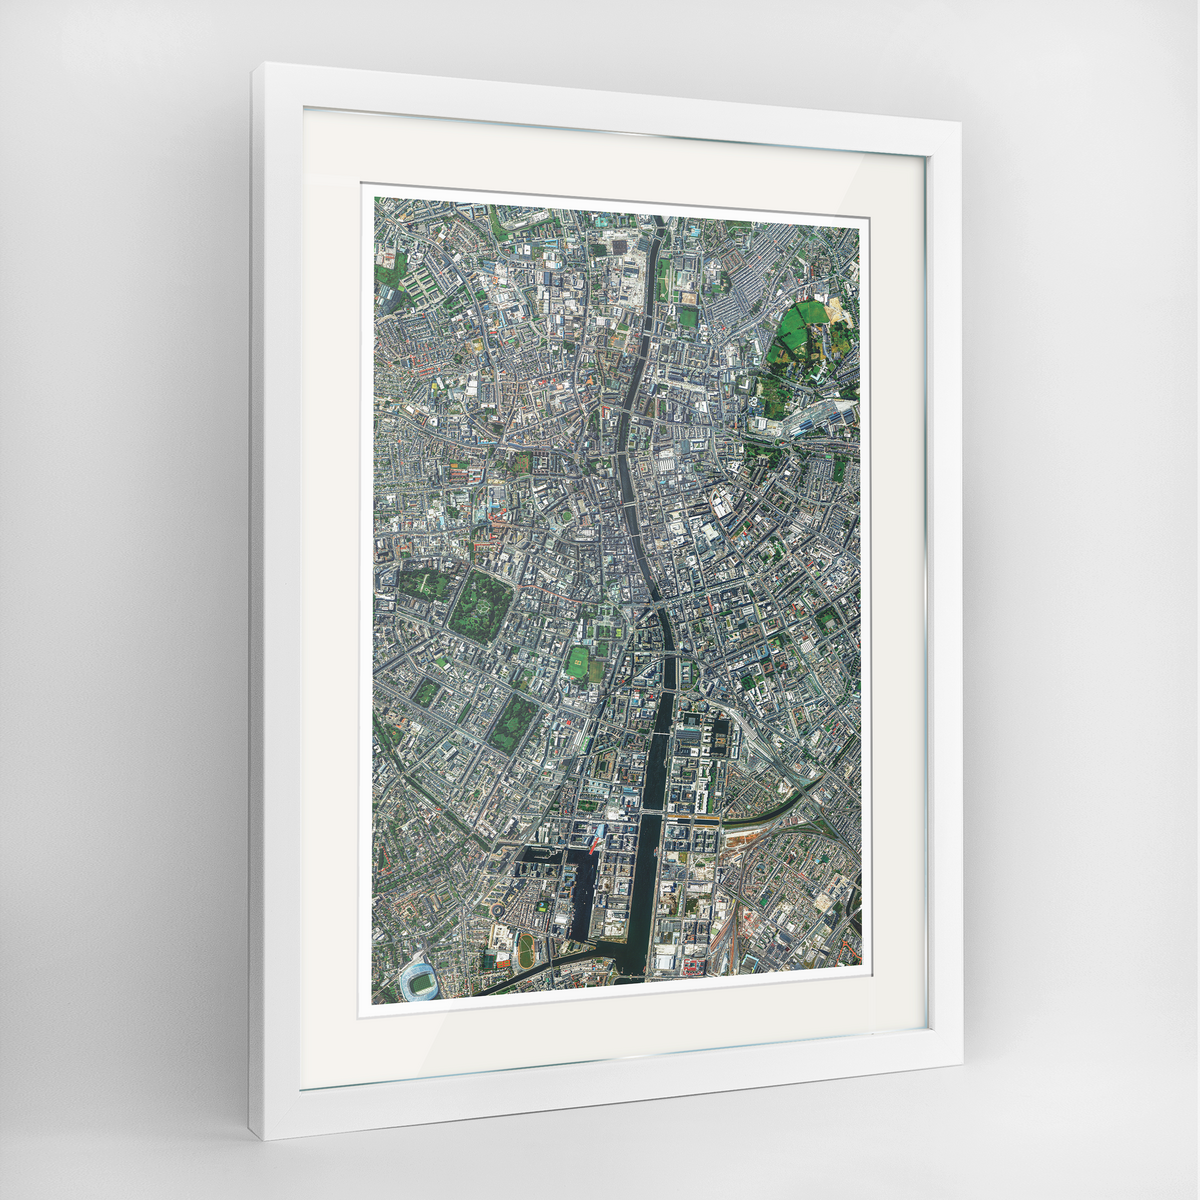 Dublin Earth Photography Art Print - Framed